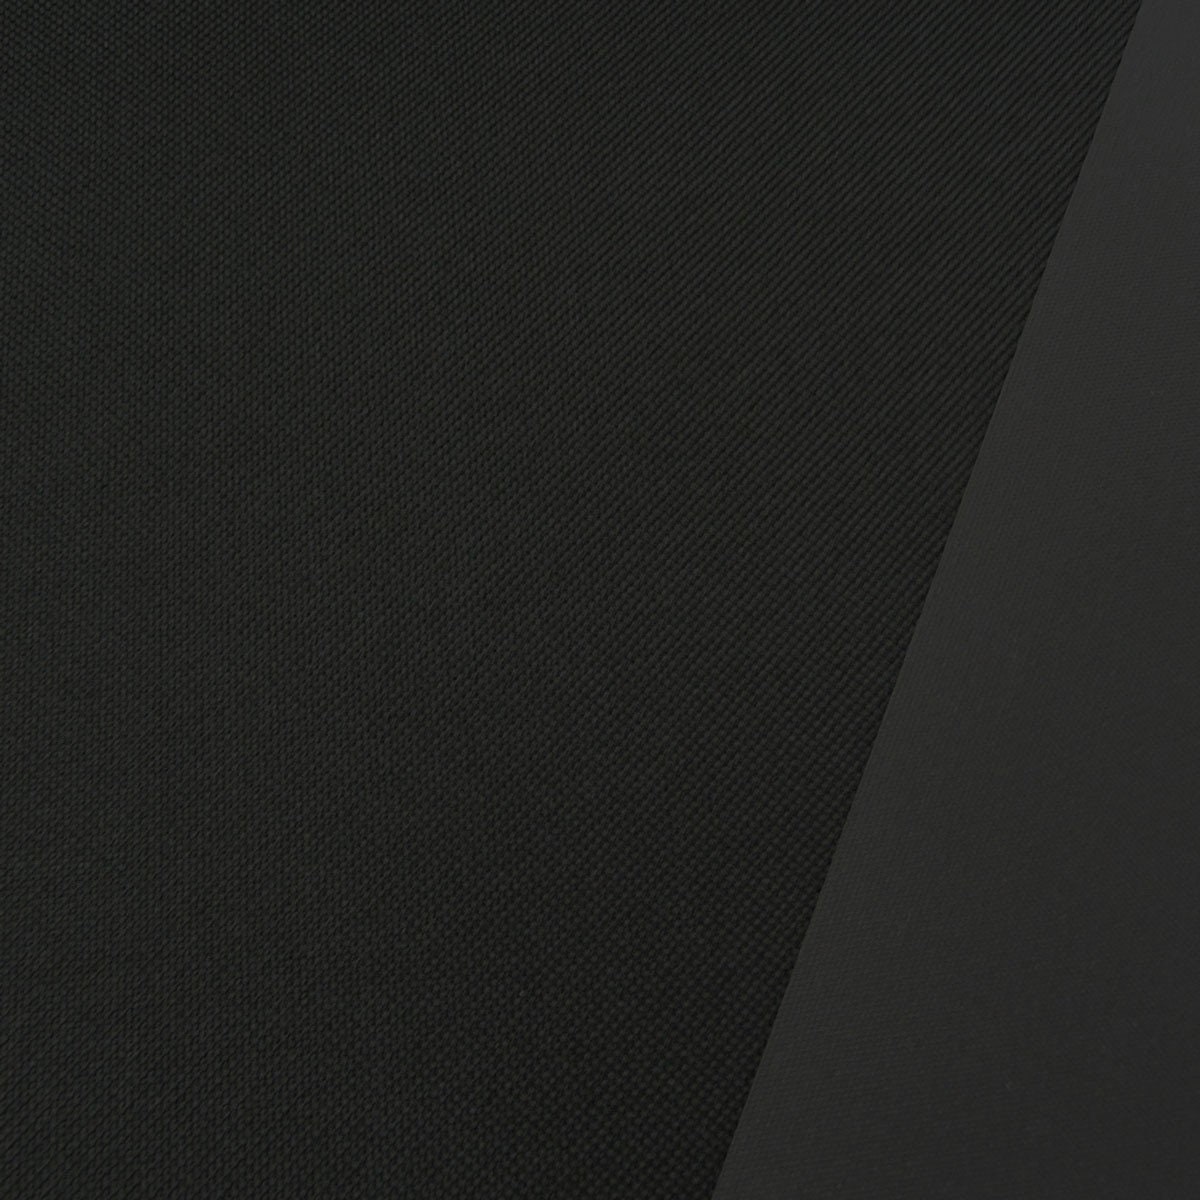 Polyester Stoff Meterware PVC Coating wasserabweisend schwarz 1,5m - .de